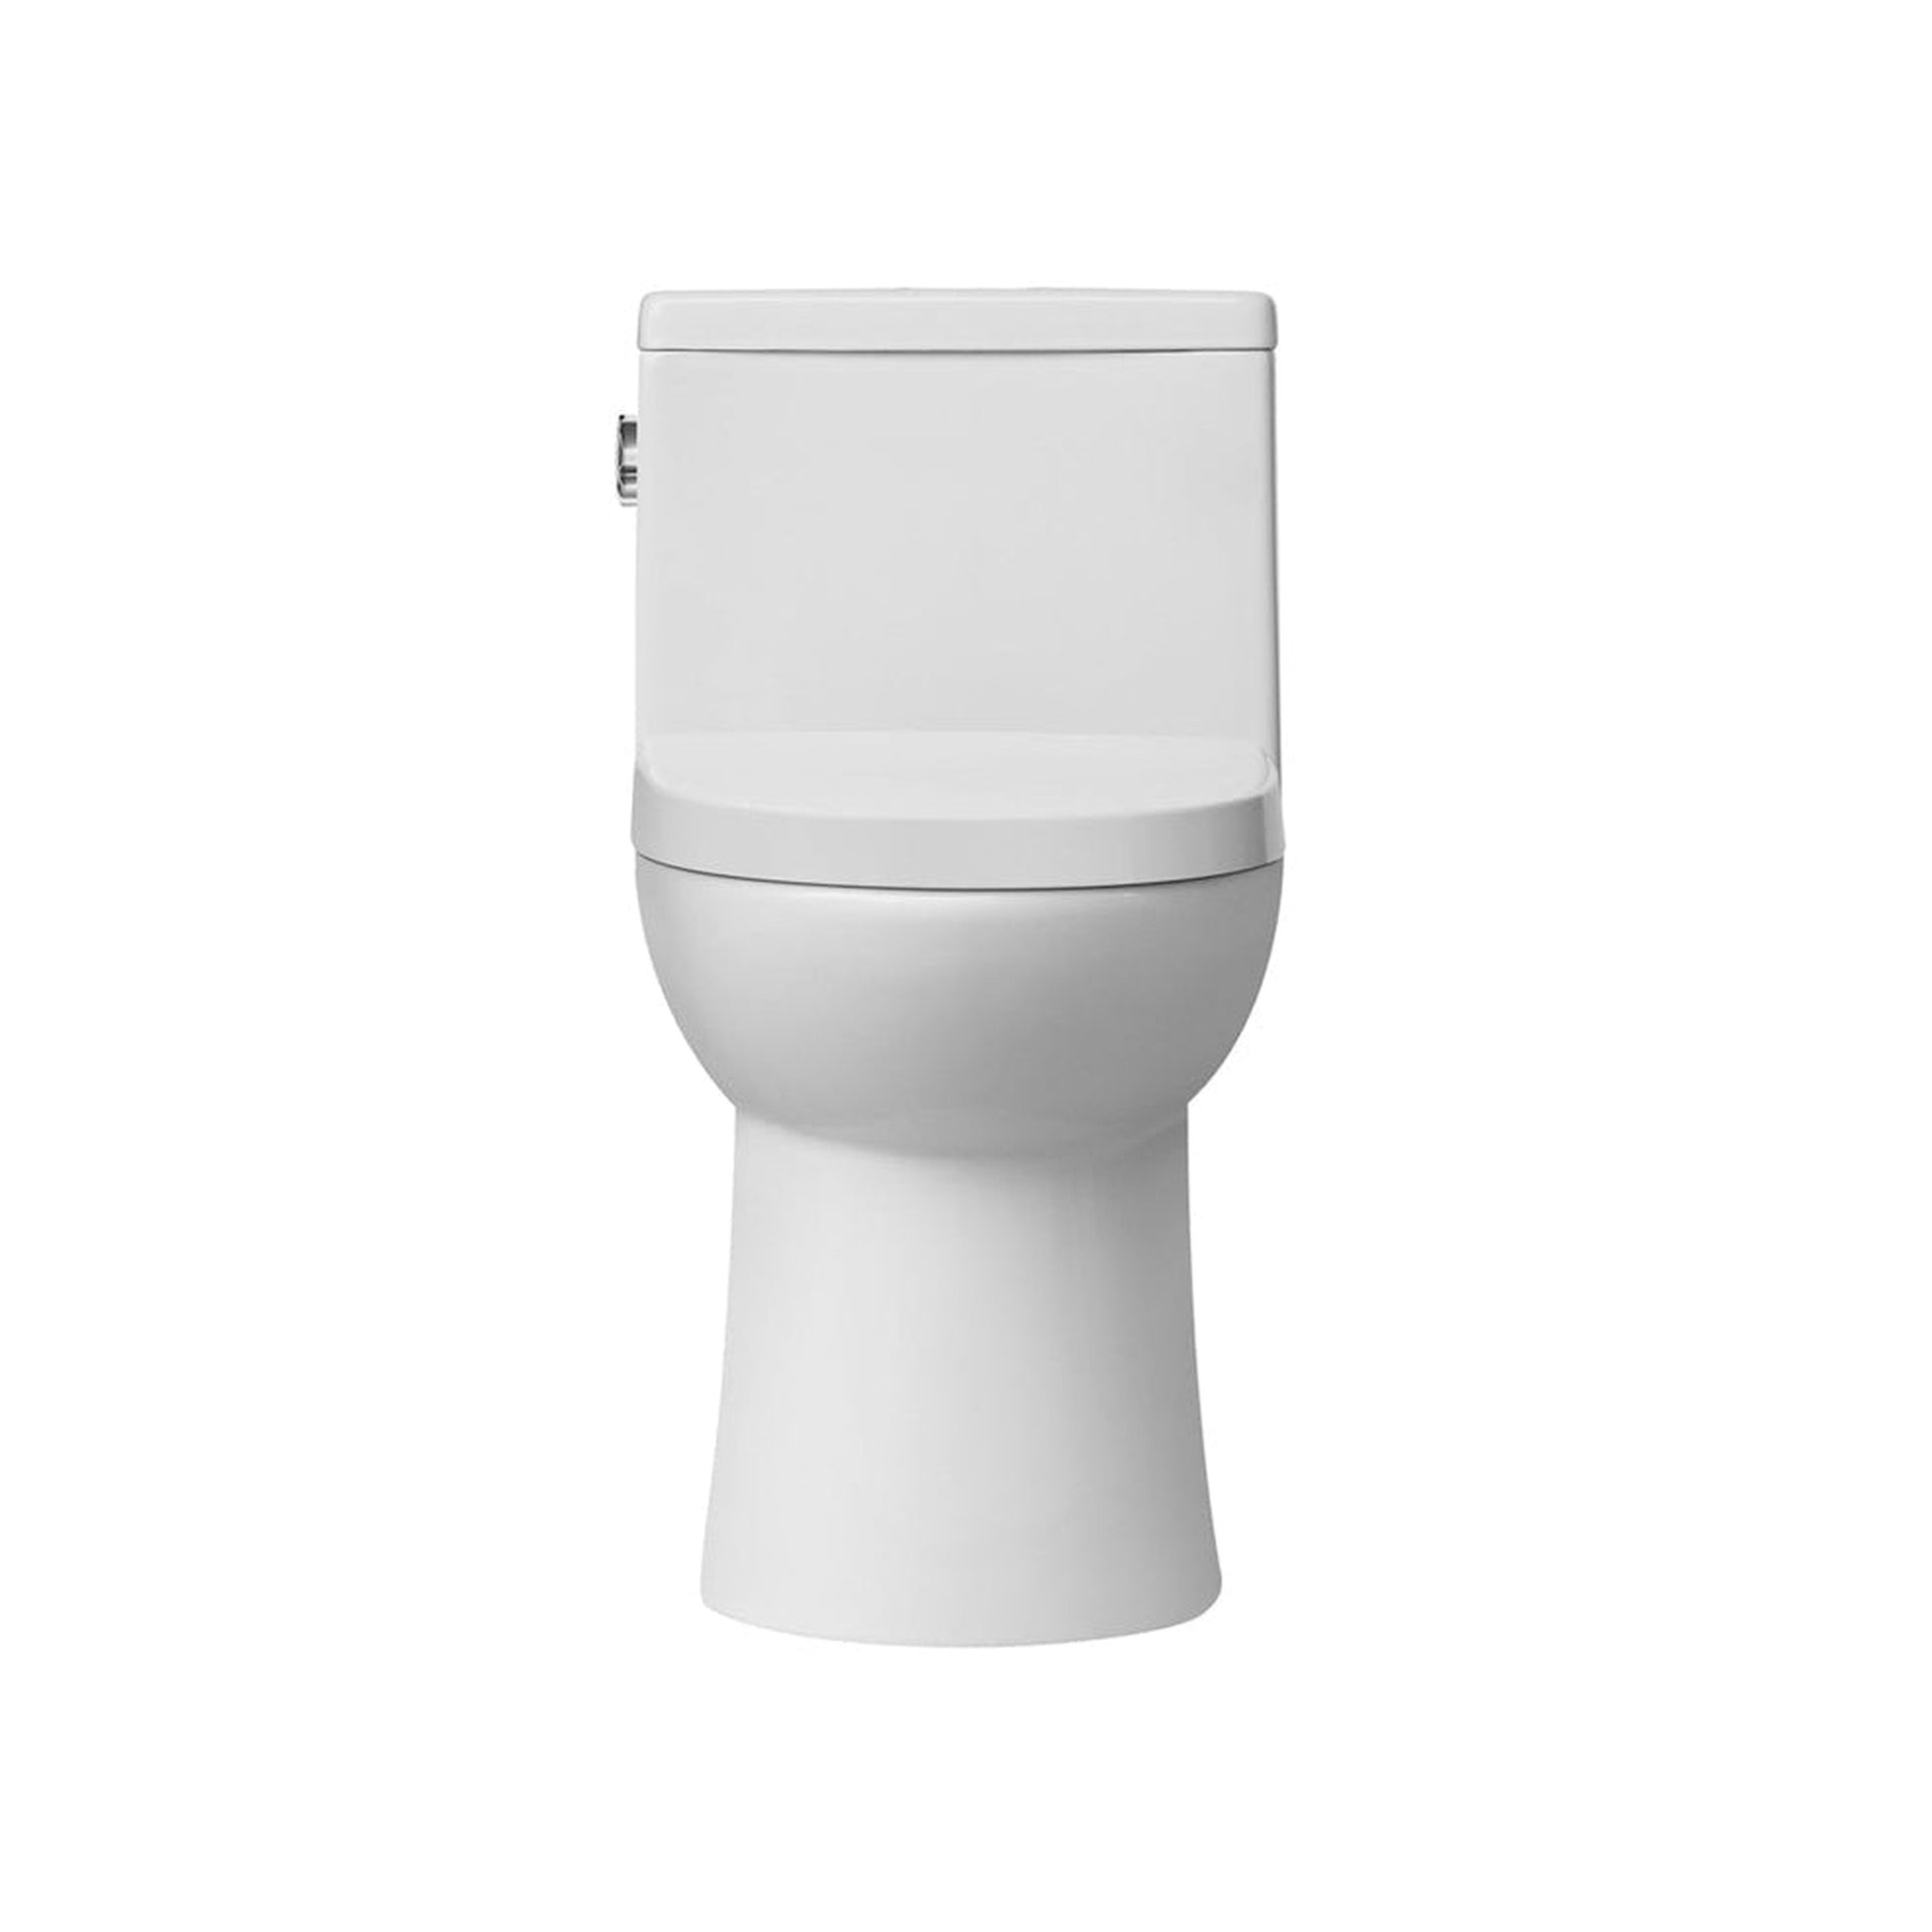 Duko Indio One-Piece Single Flush Round Front Toilet